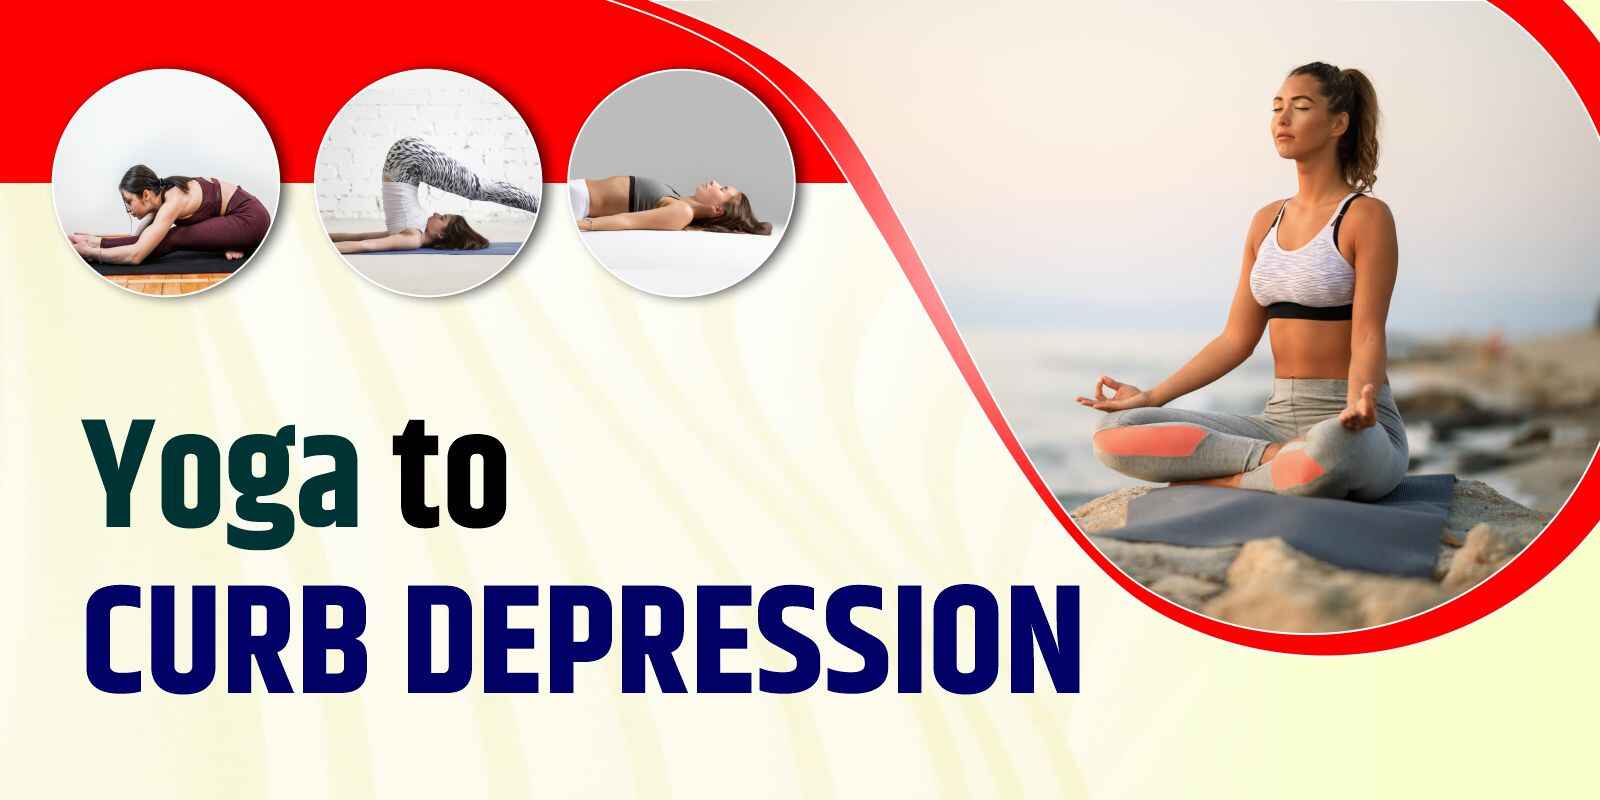 Yoga to curb depression